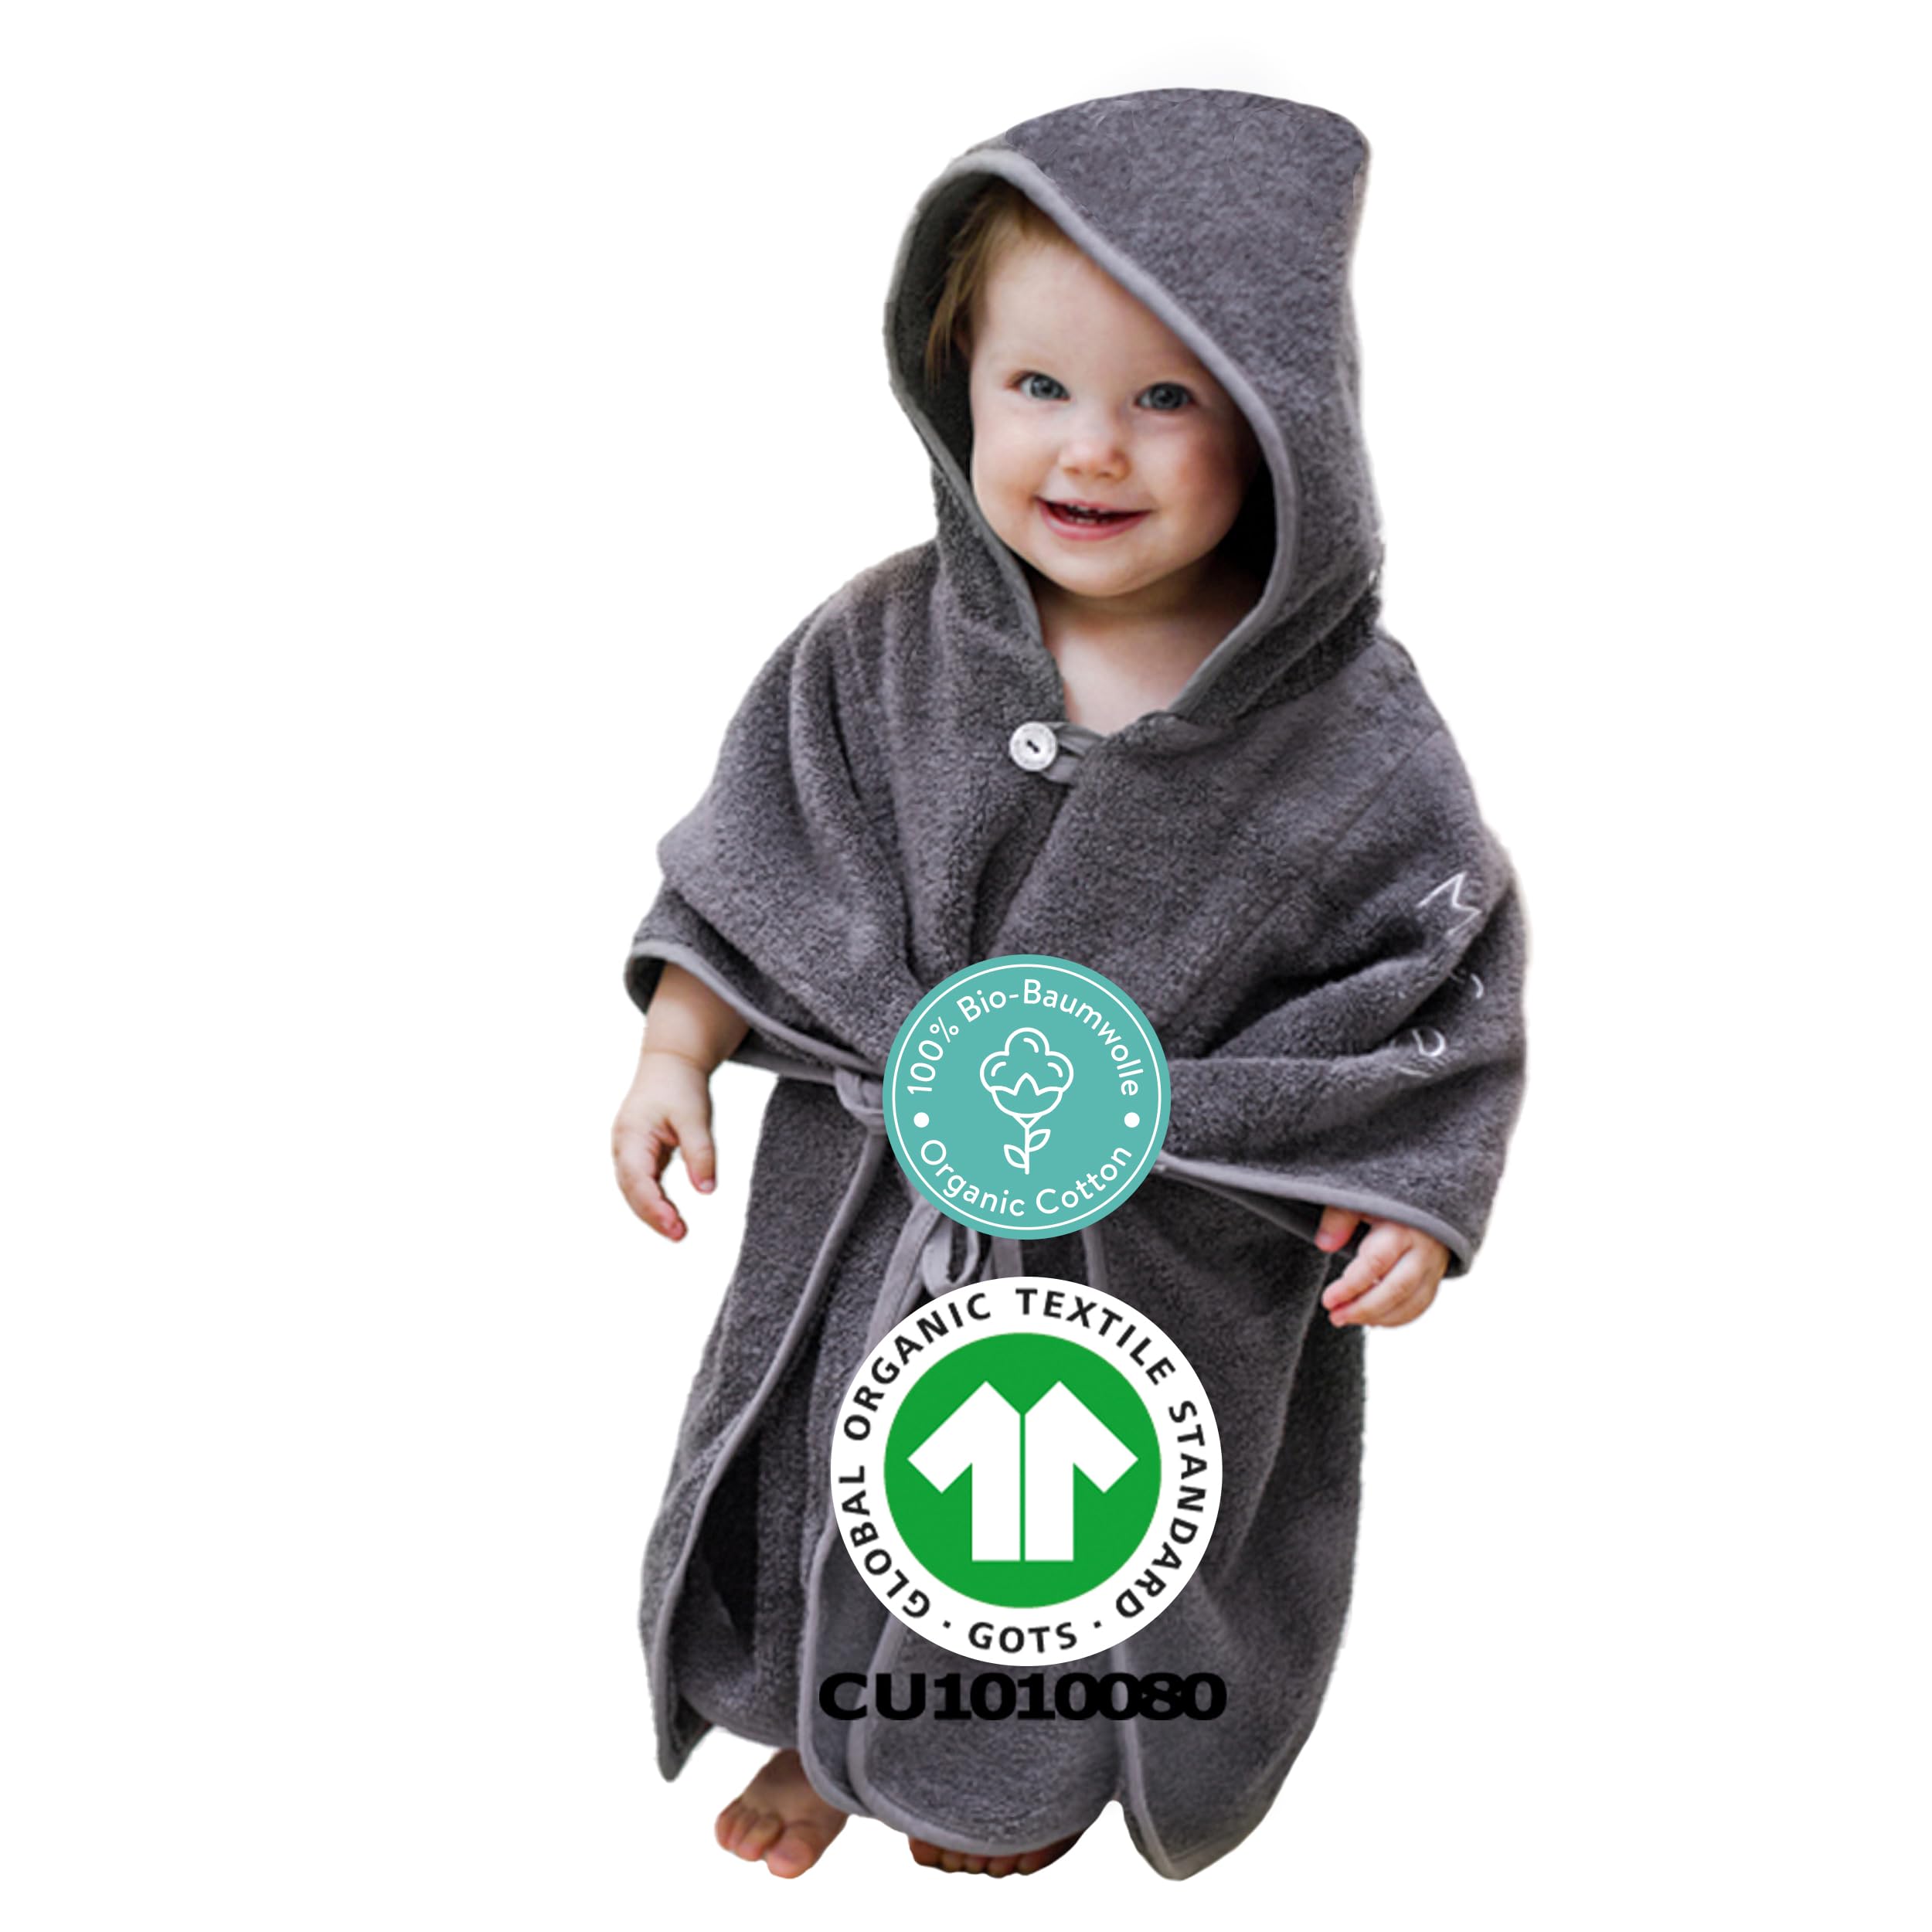 Mabyen Baby Kapuzen Bademantel | Baby Poncho mit Kapuze - aus 100% Bio-Baumwolle - OEKOTEX zertifiziert - Poncho bis 3 Jahre geeignet - Babyhandtuch mit Kapuze - 50x70 cm - dunkelgrau